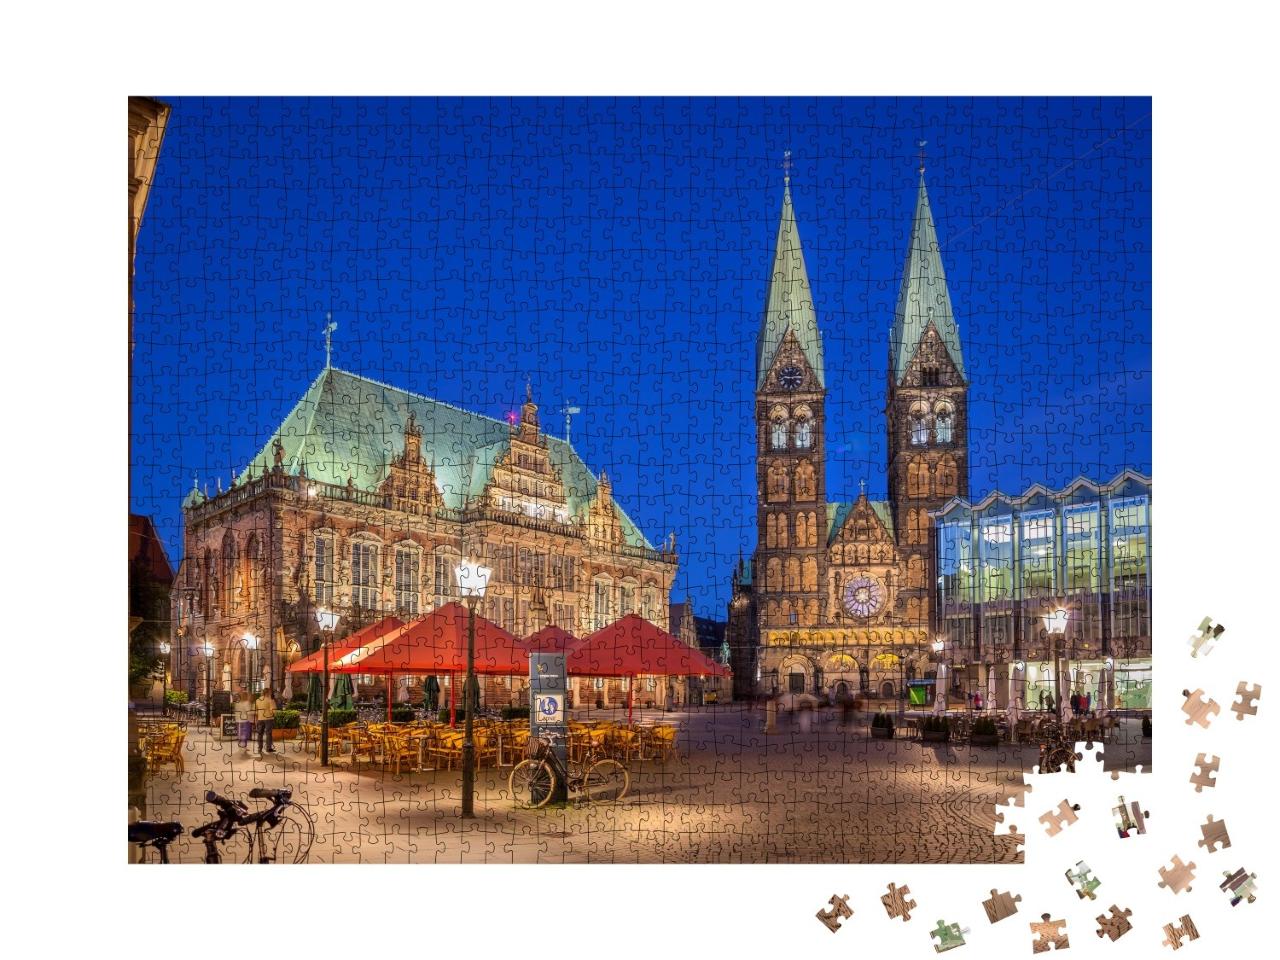 Puzzle 1000 Teile „Bremer Marktplatz im Zentrum der Hansestadt Bremen“